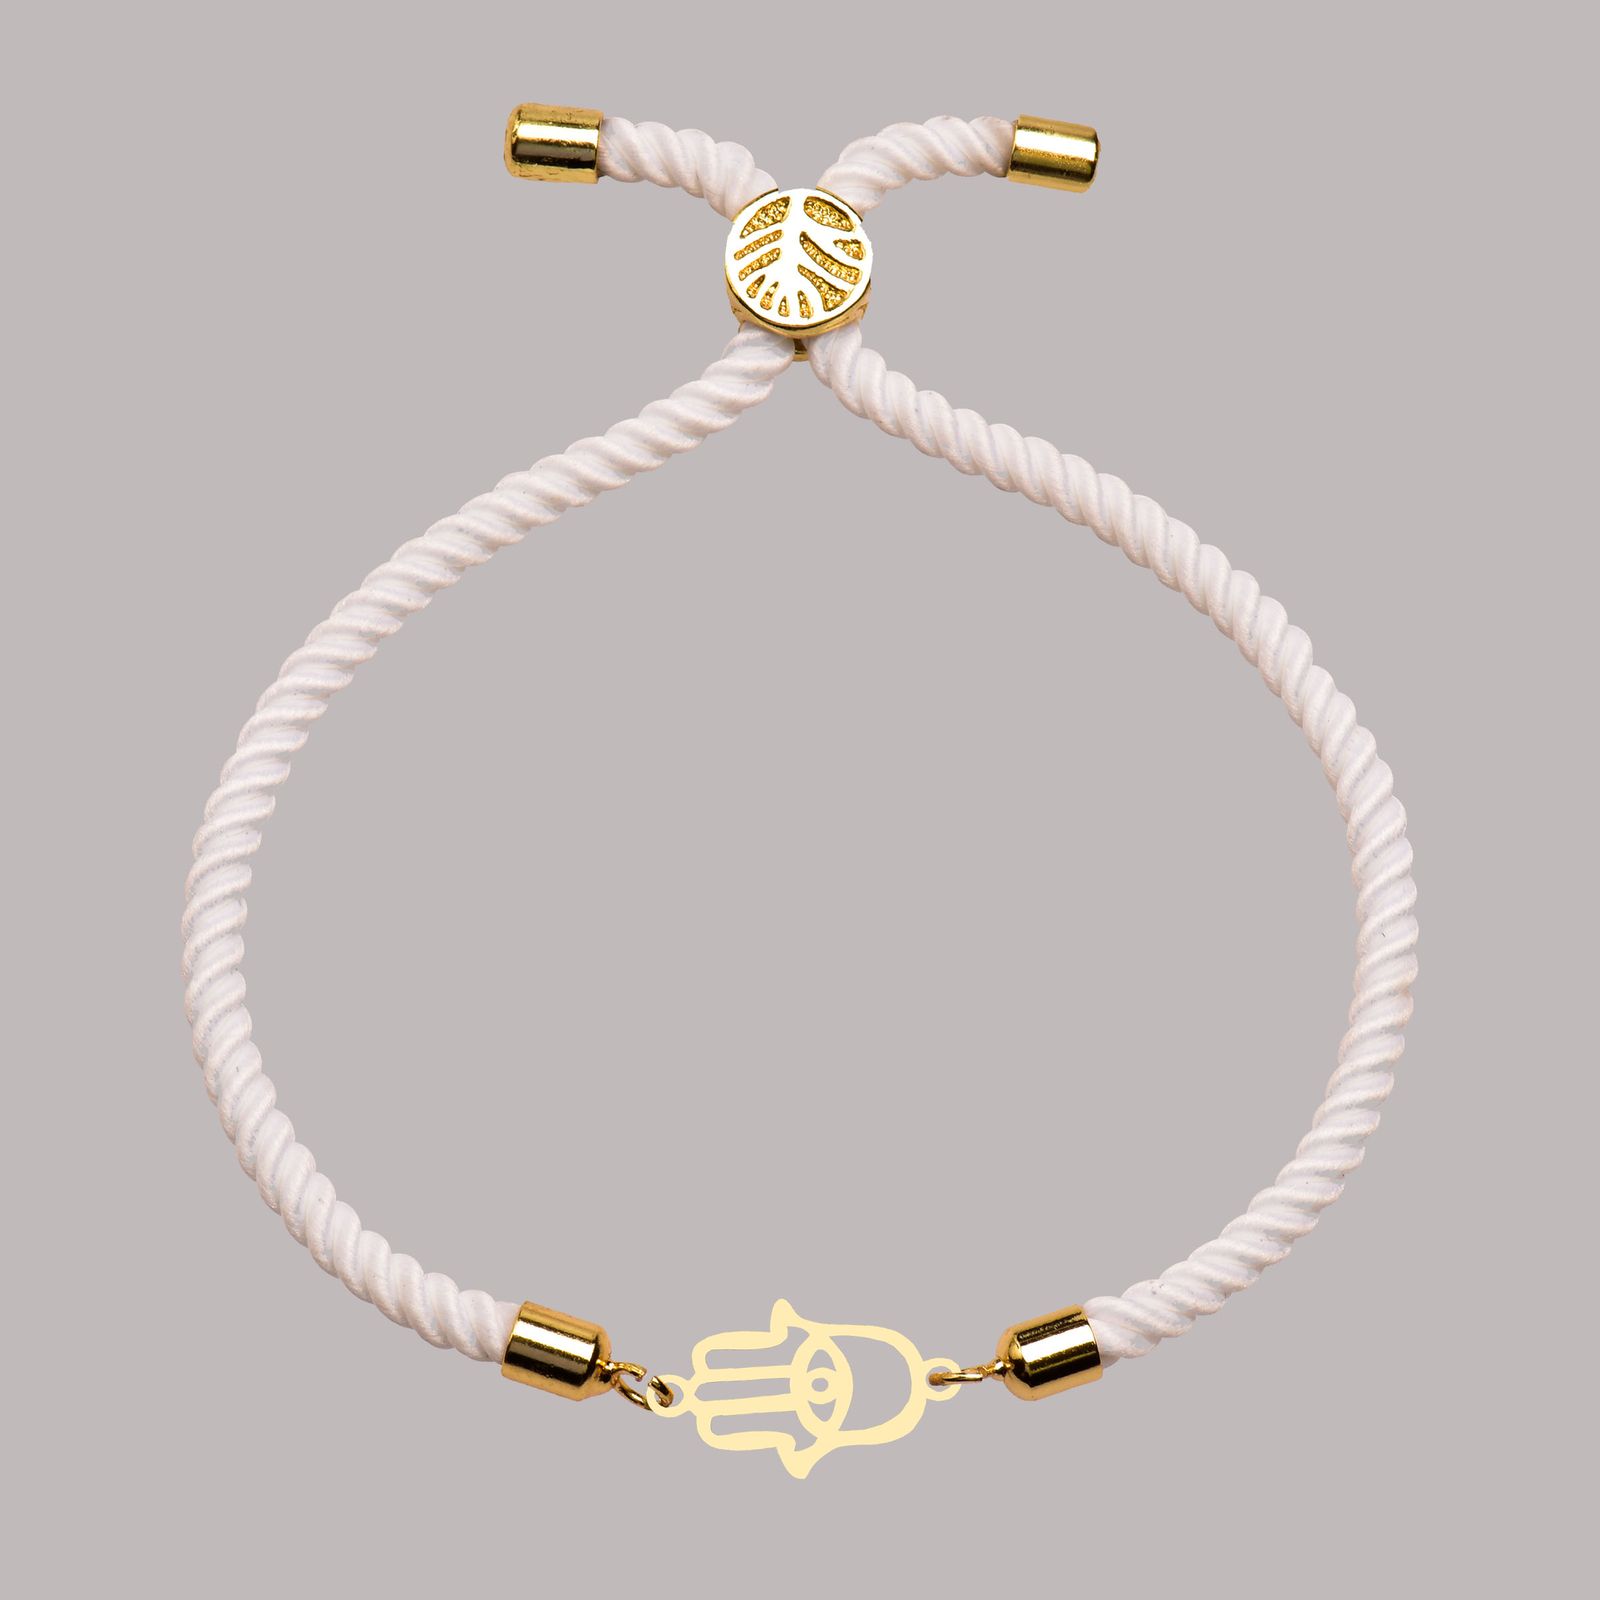 دستبند طلا 18 عیار زنانه کرابو طرح دست هما مدل Kr102239 -  - 2